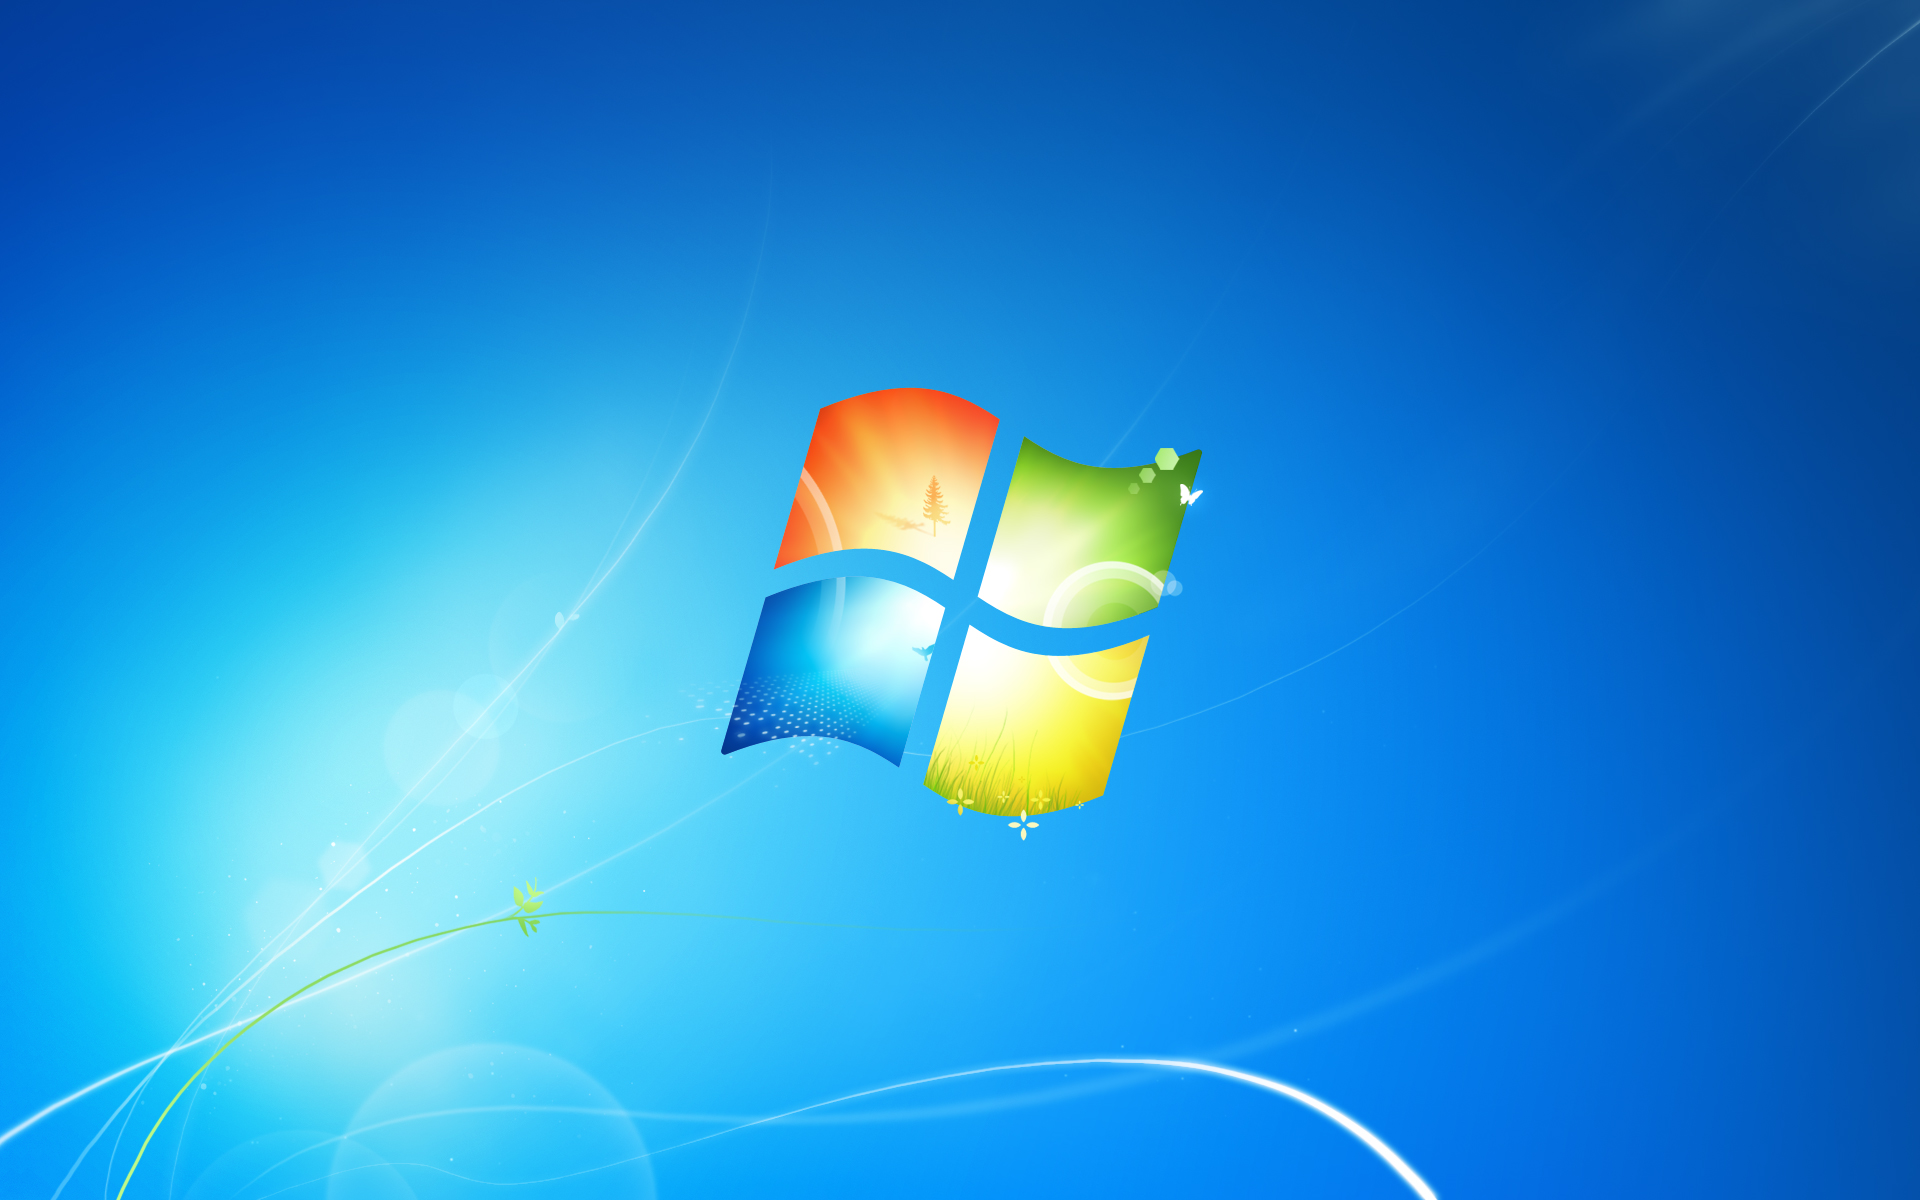 Windows Desktop Background Change